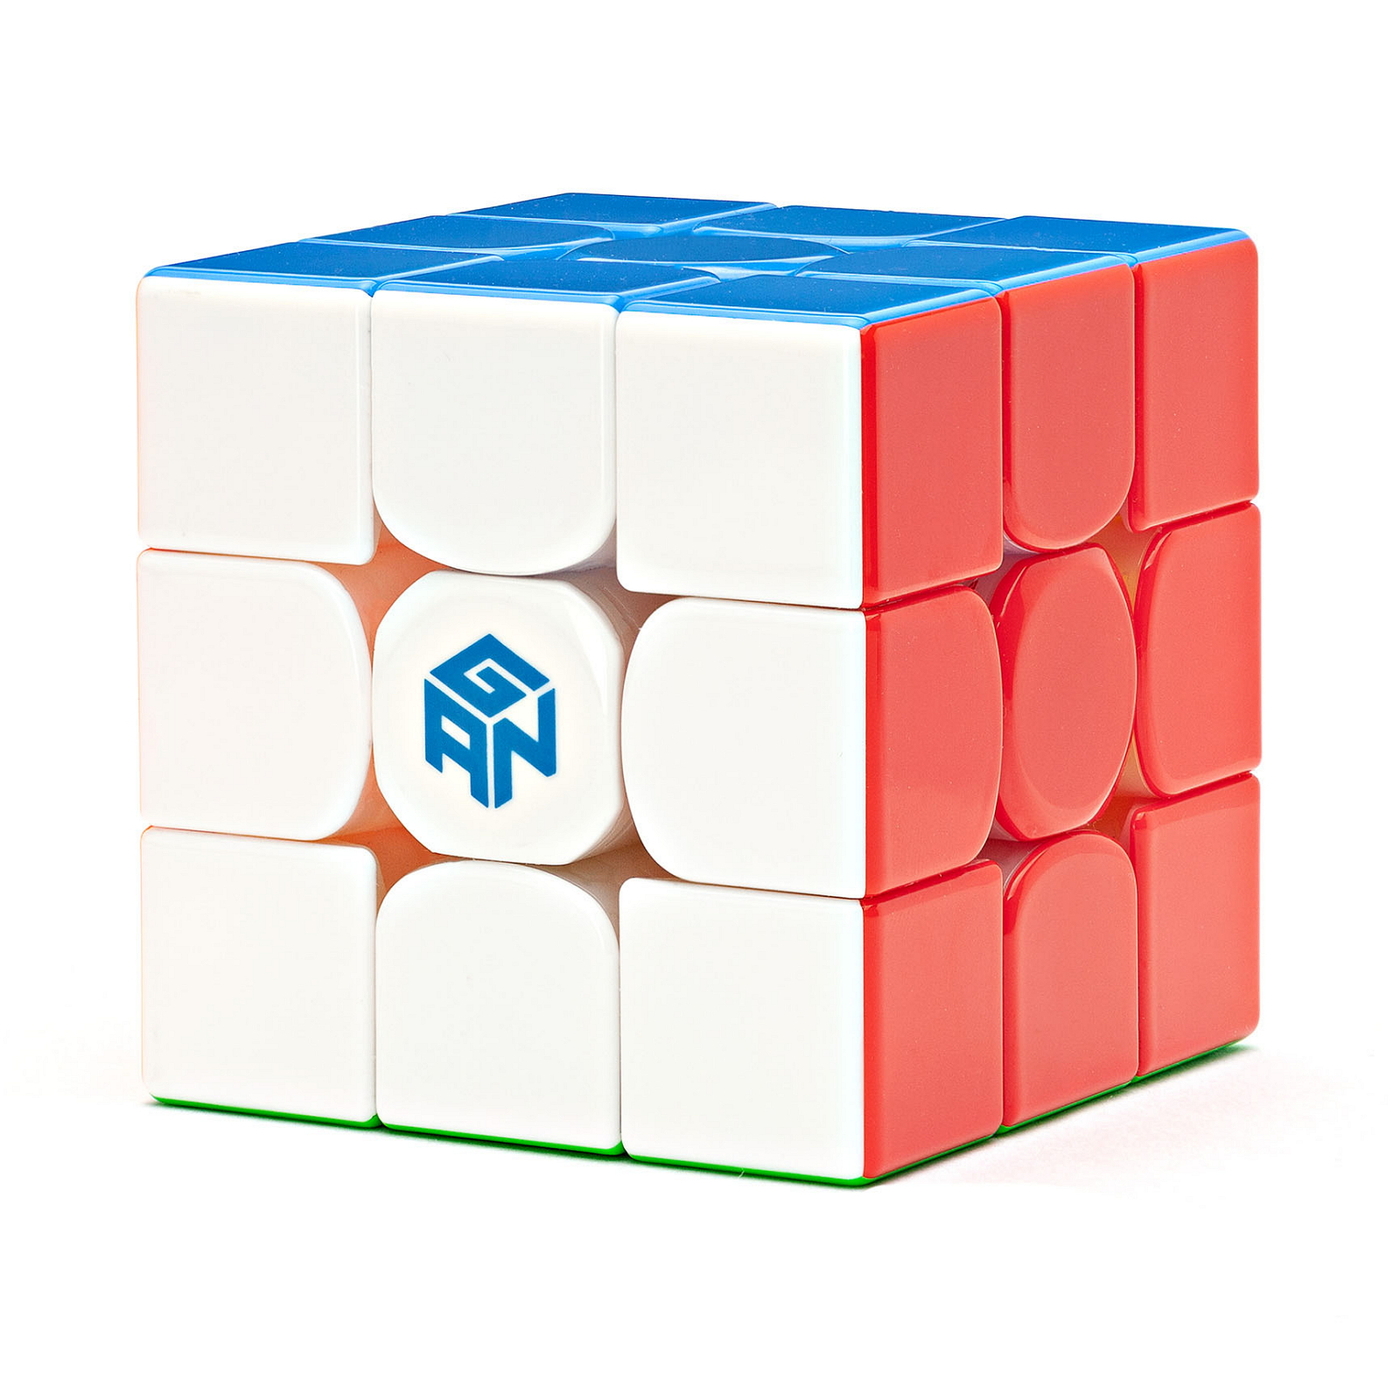 19 мая — день рождения Кубика Рубика